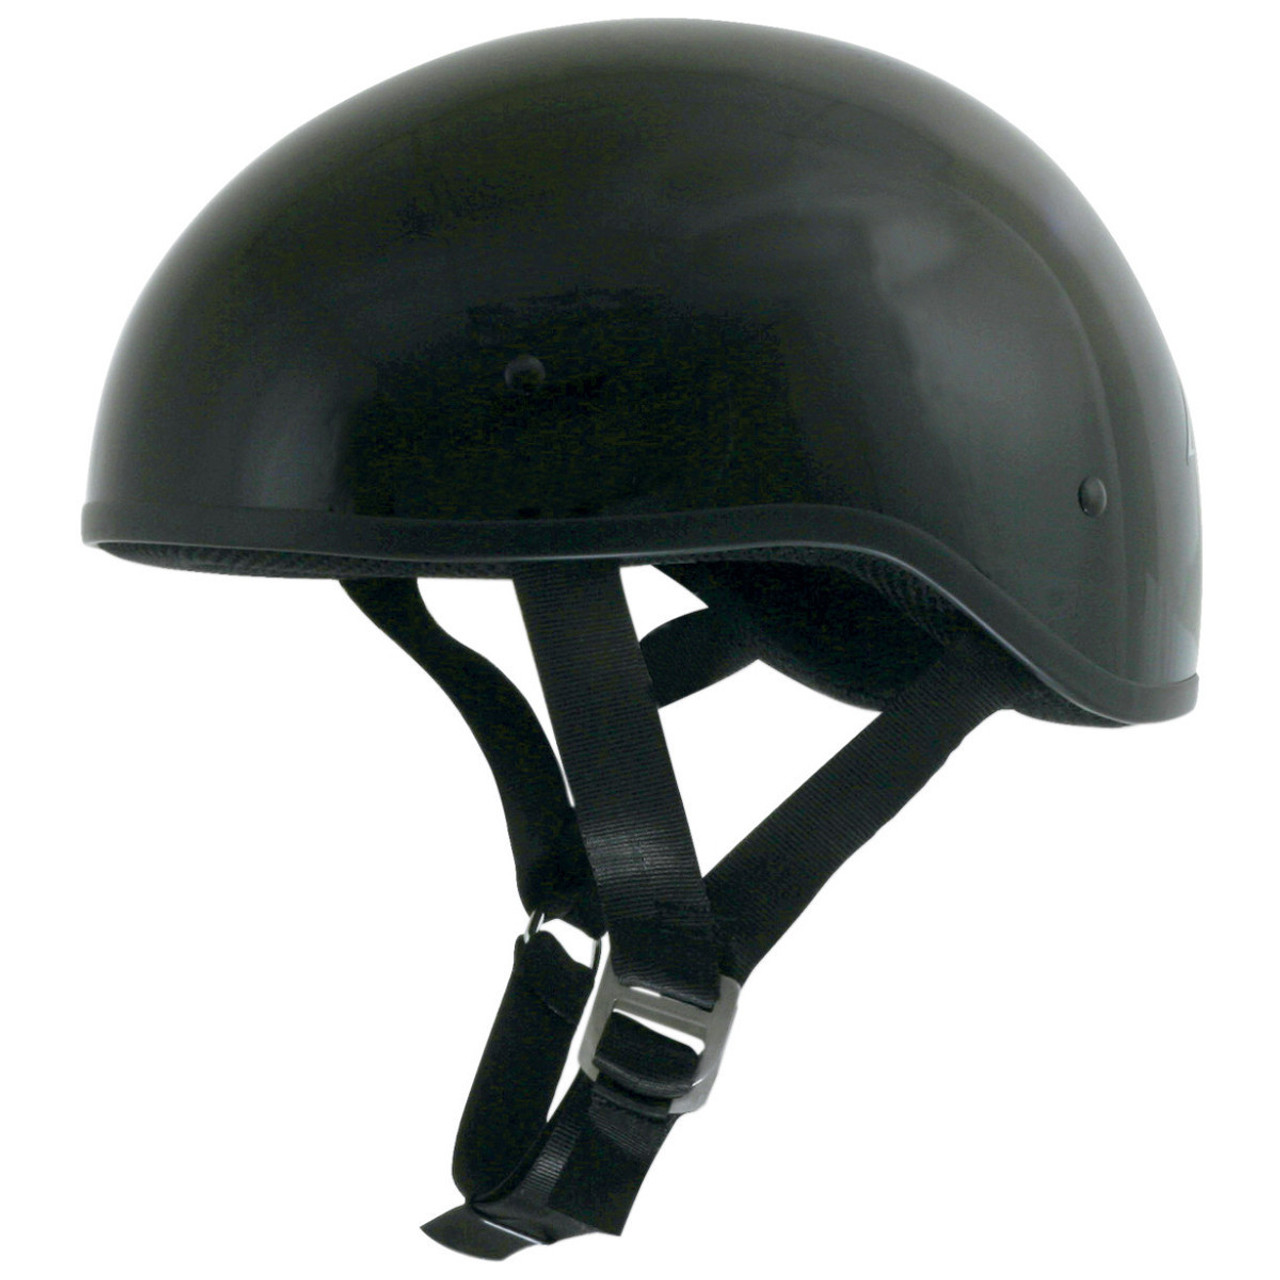 AFX FX-200 Slick Half Helmet